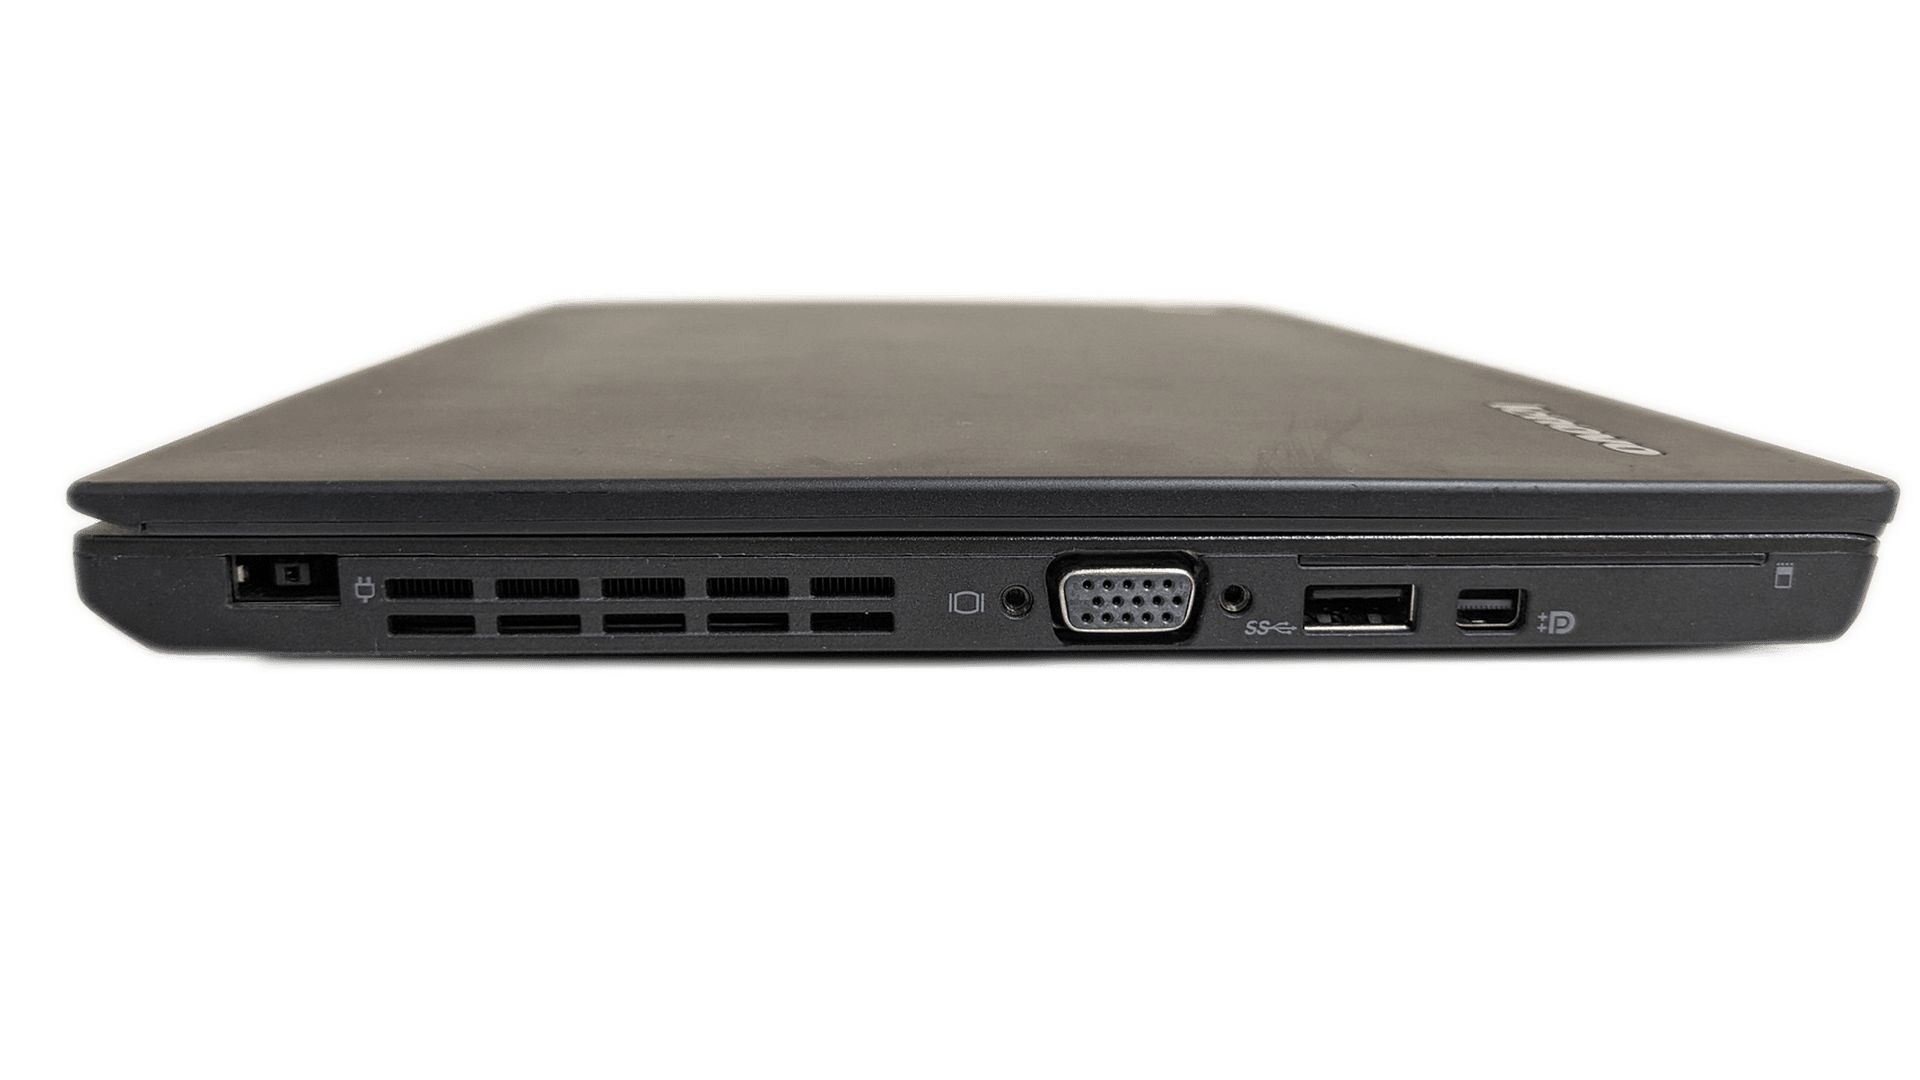 Lenovo ThinkPad X250 12.5" 1366x768 i5-5300U 8GB 256GB батерия 1+ часа